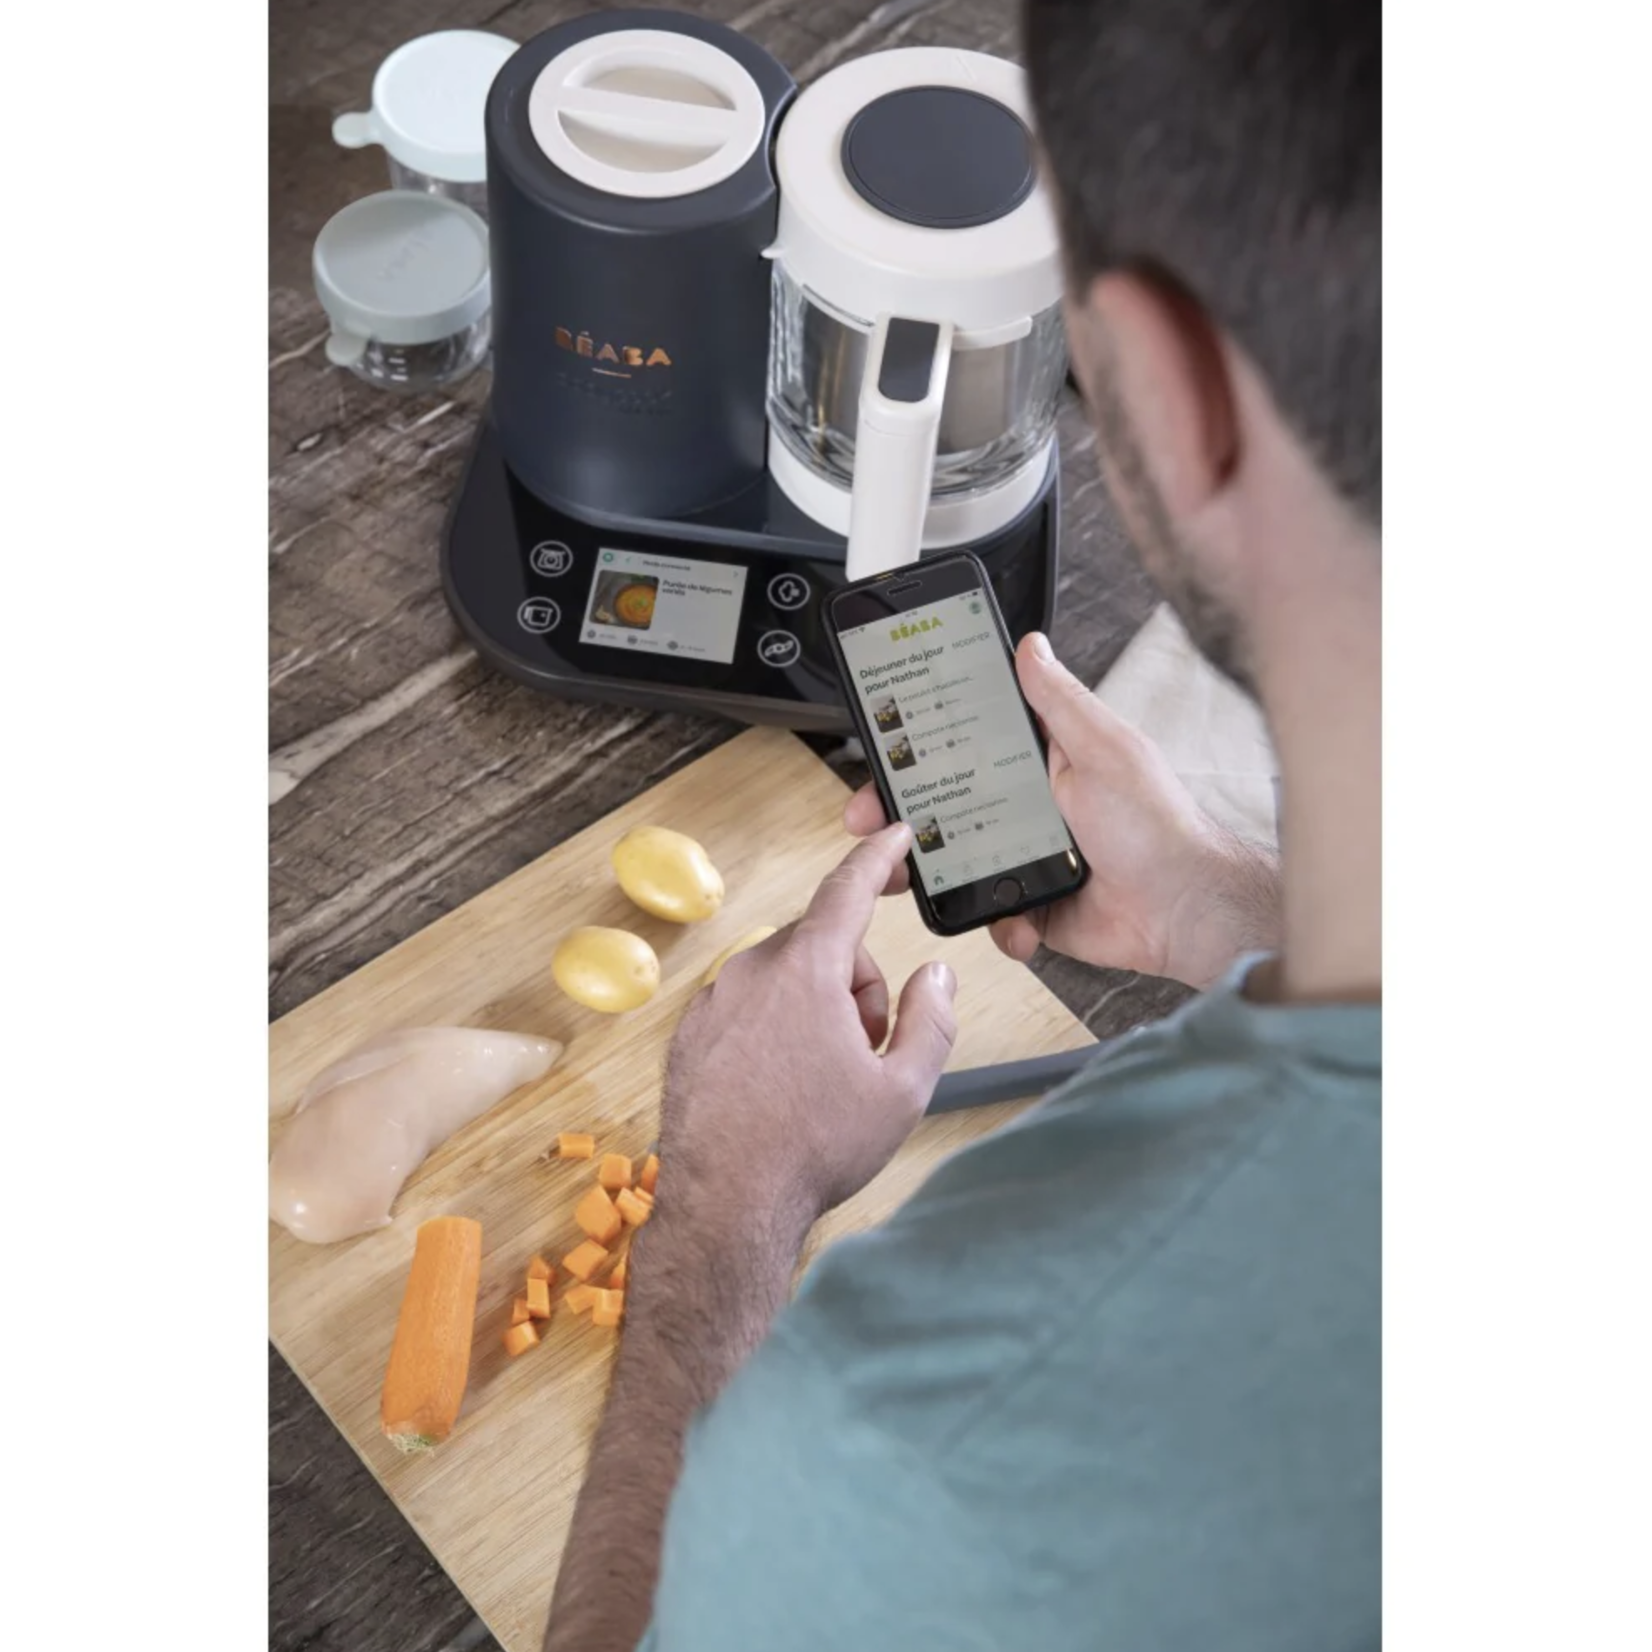 BEABA Babycook Smart Robot Cooker - Charcoal Grey